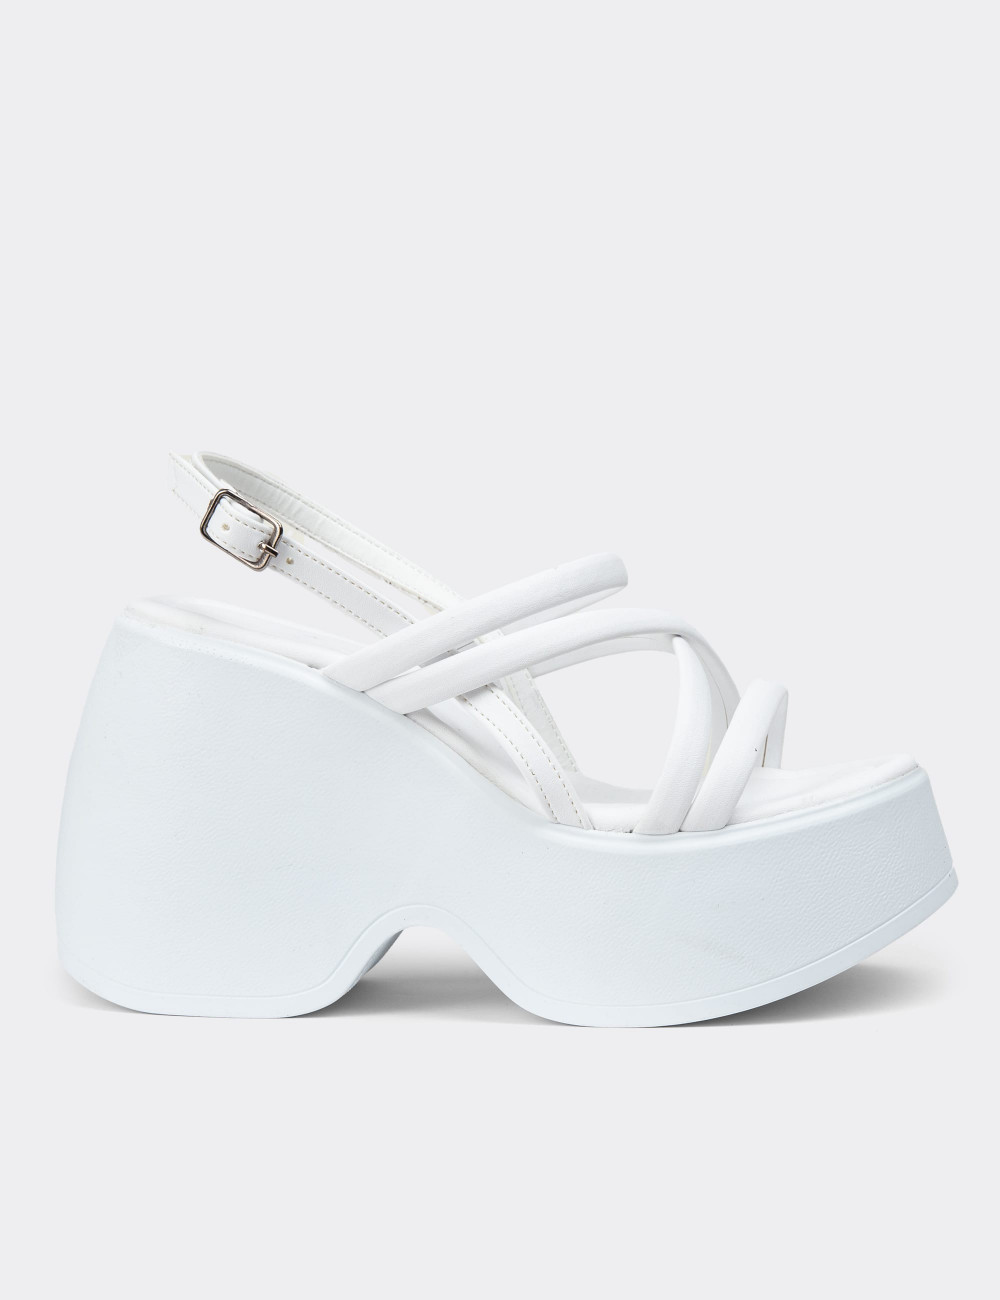 Beyaz Kadın Platform Topuk Sandalet - DLG04ZBYZC01